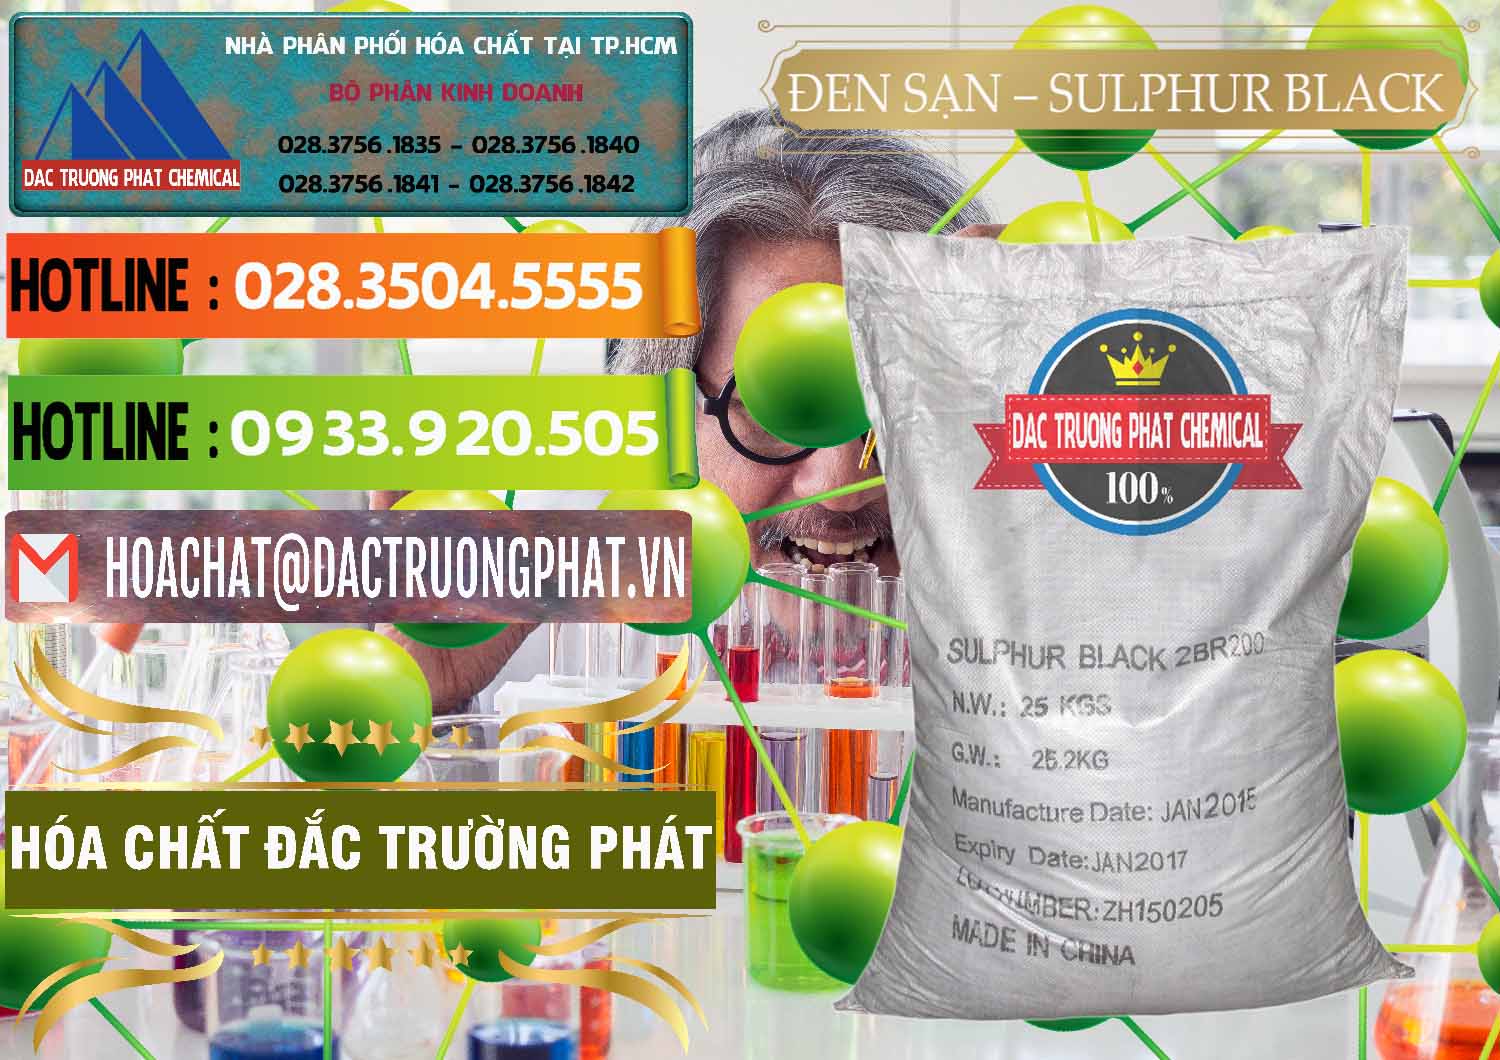 Cty phân phối - bán Đen Sạn – Sulphur Black Trung Quốc China - 0062 - Nhà cung cấp - phân phối hóa chất tại TP.HCM - cungcaphoachat.com.vn